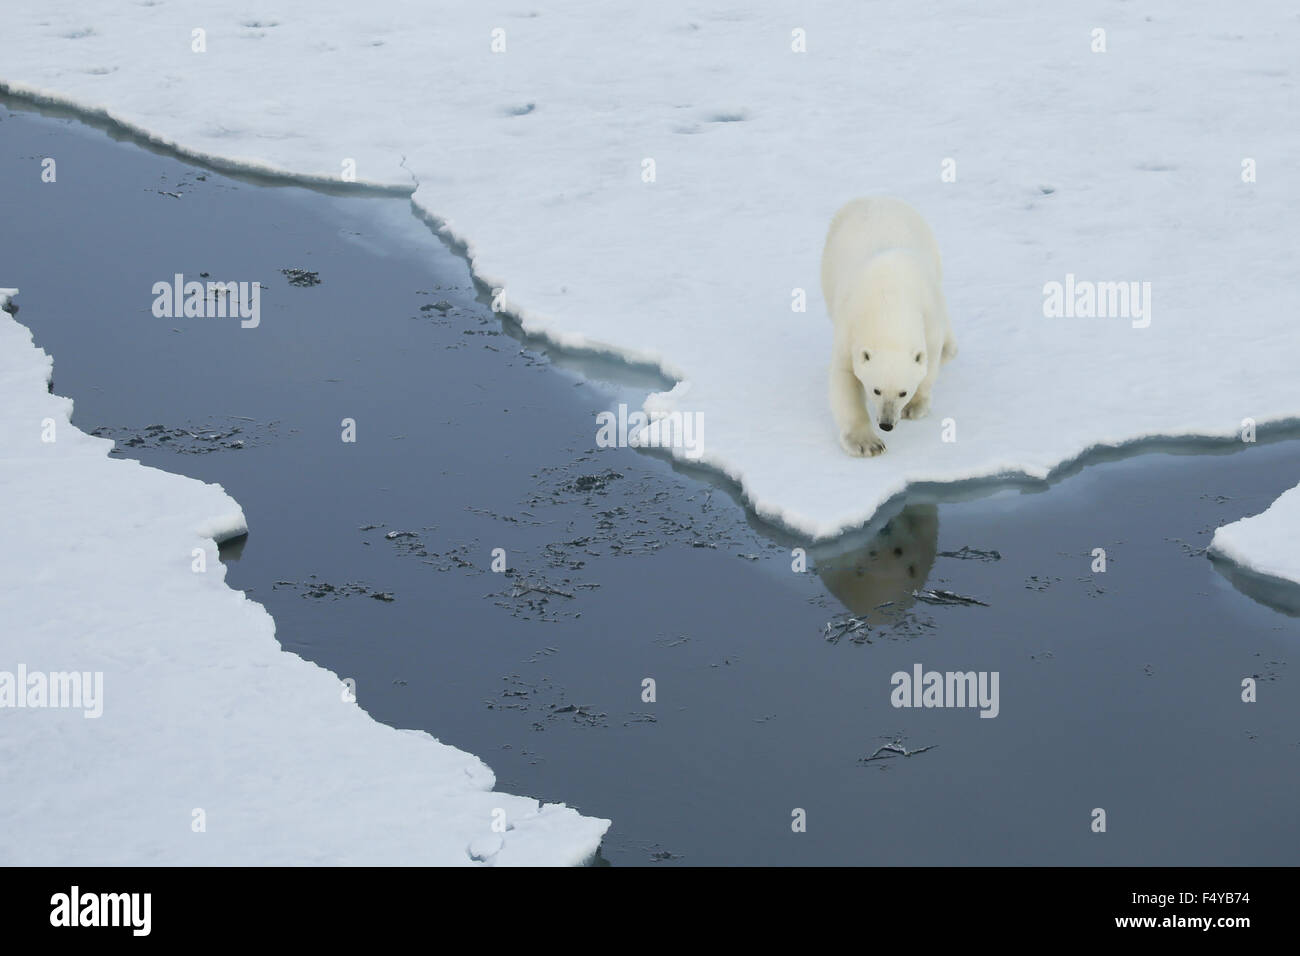 Groenlandia, Scoresby Sound, oso polar camina hasta el borde del hielo marino, la reflexión de oso en el agua. Foto de stock